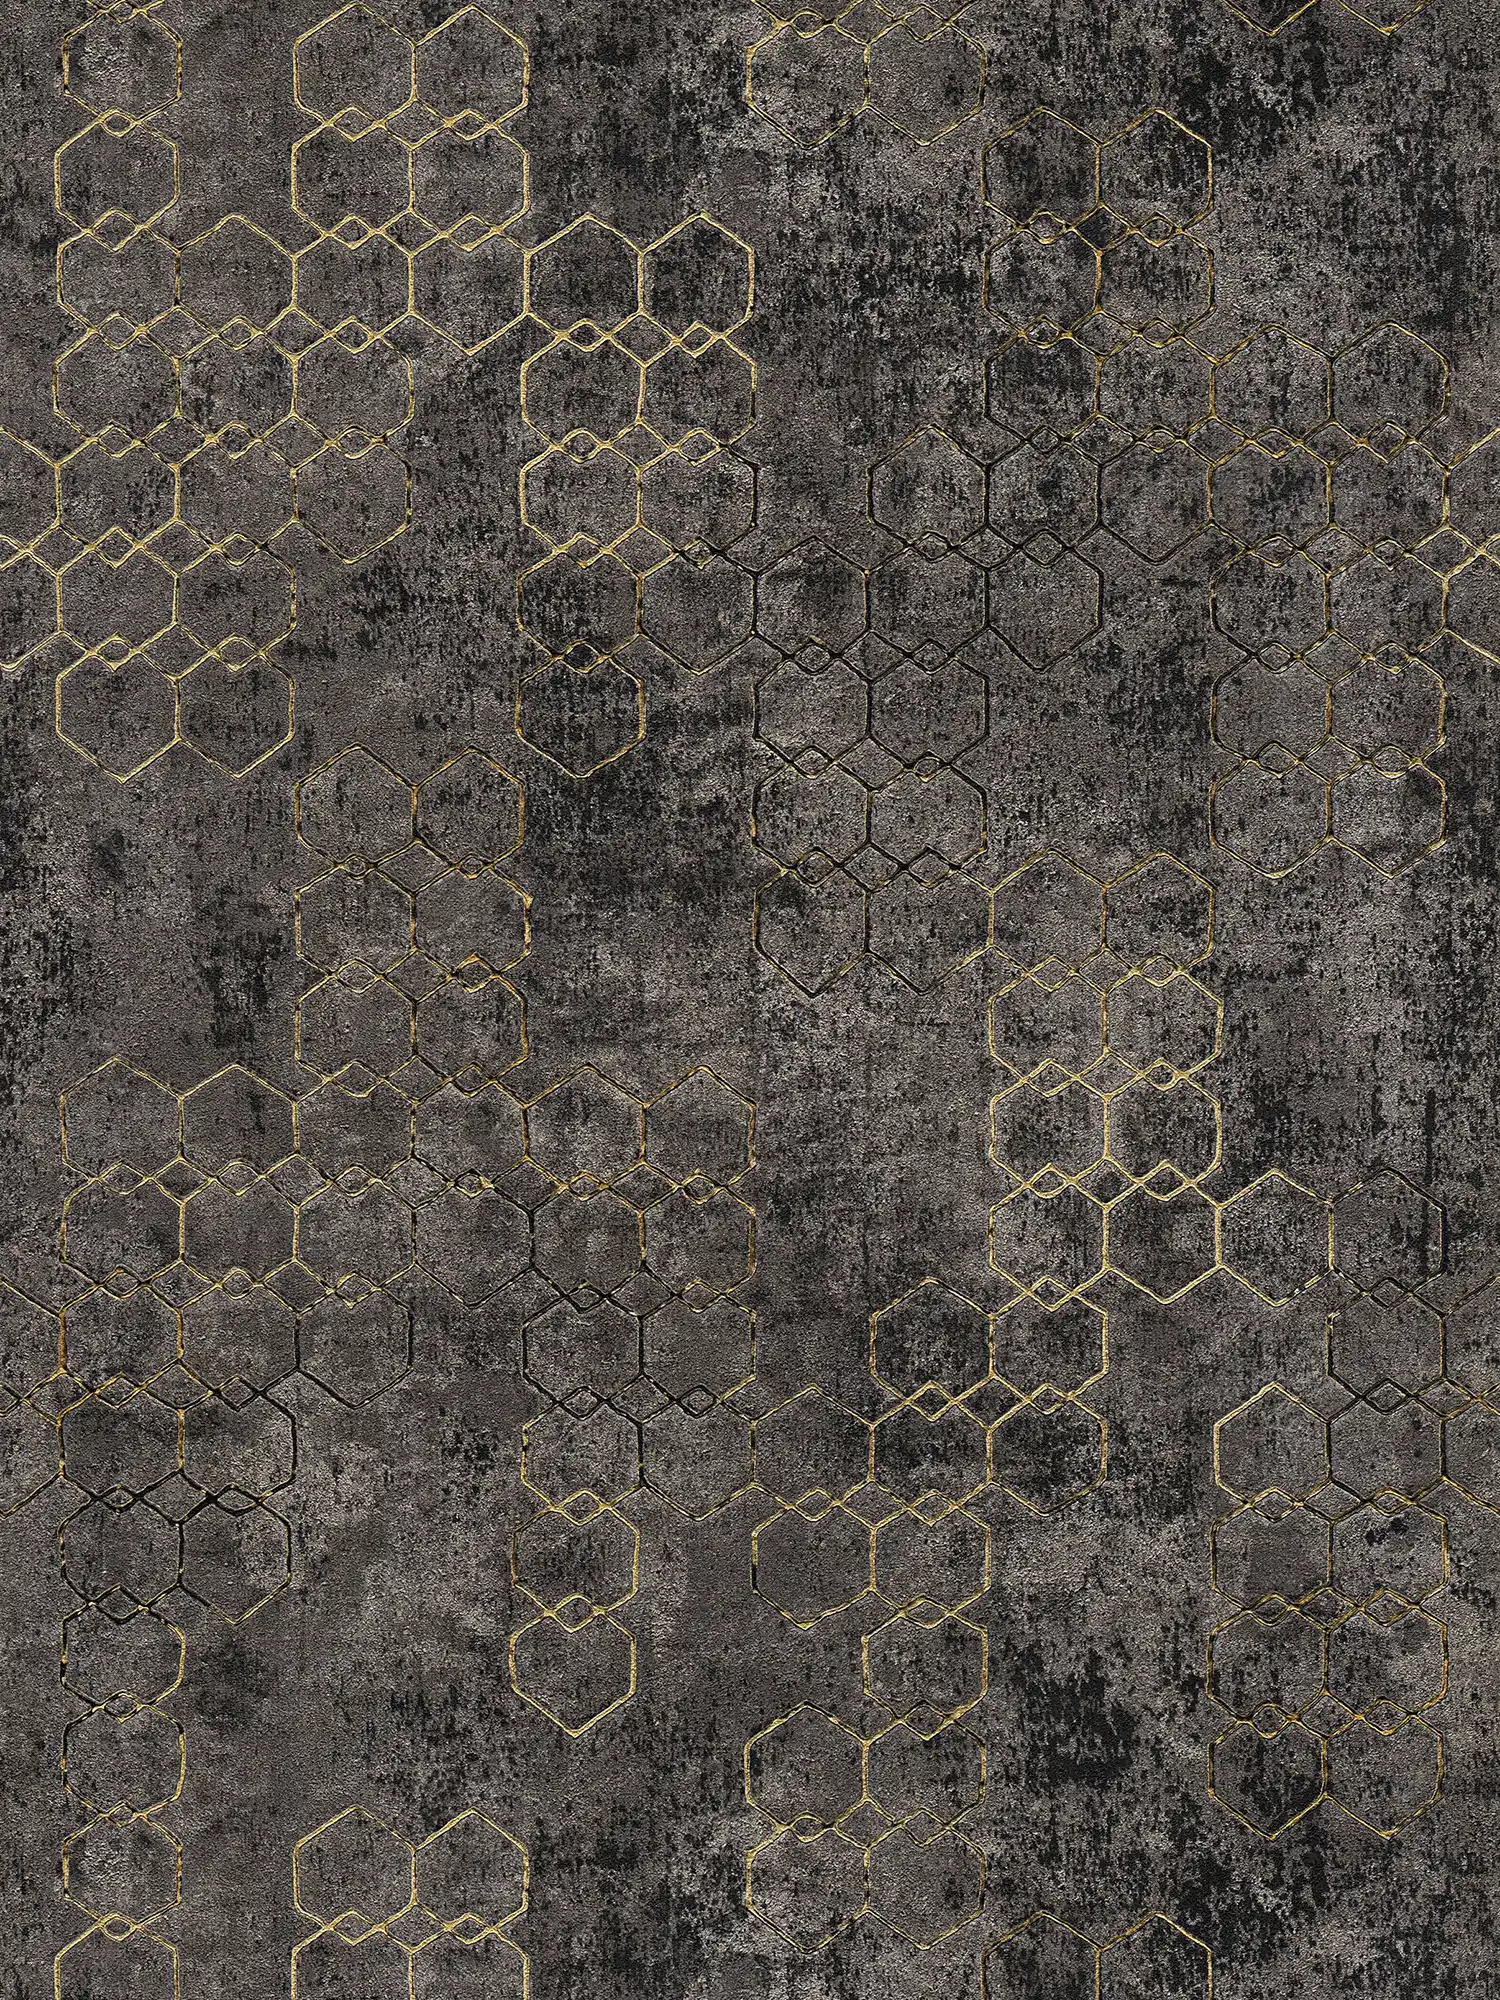 behang modern design goud & beton effect - zwart, goud
